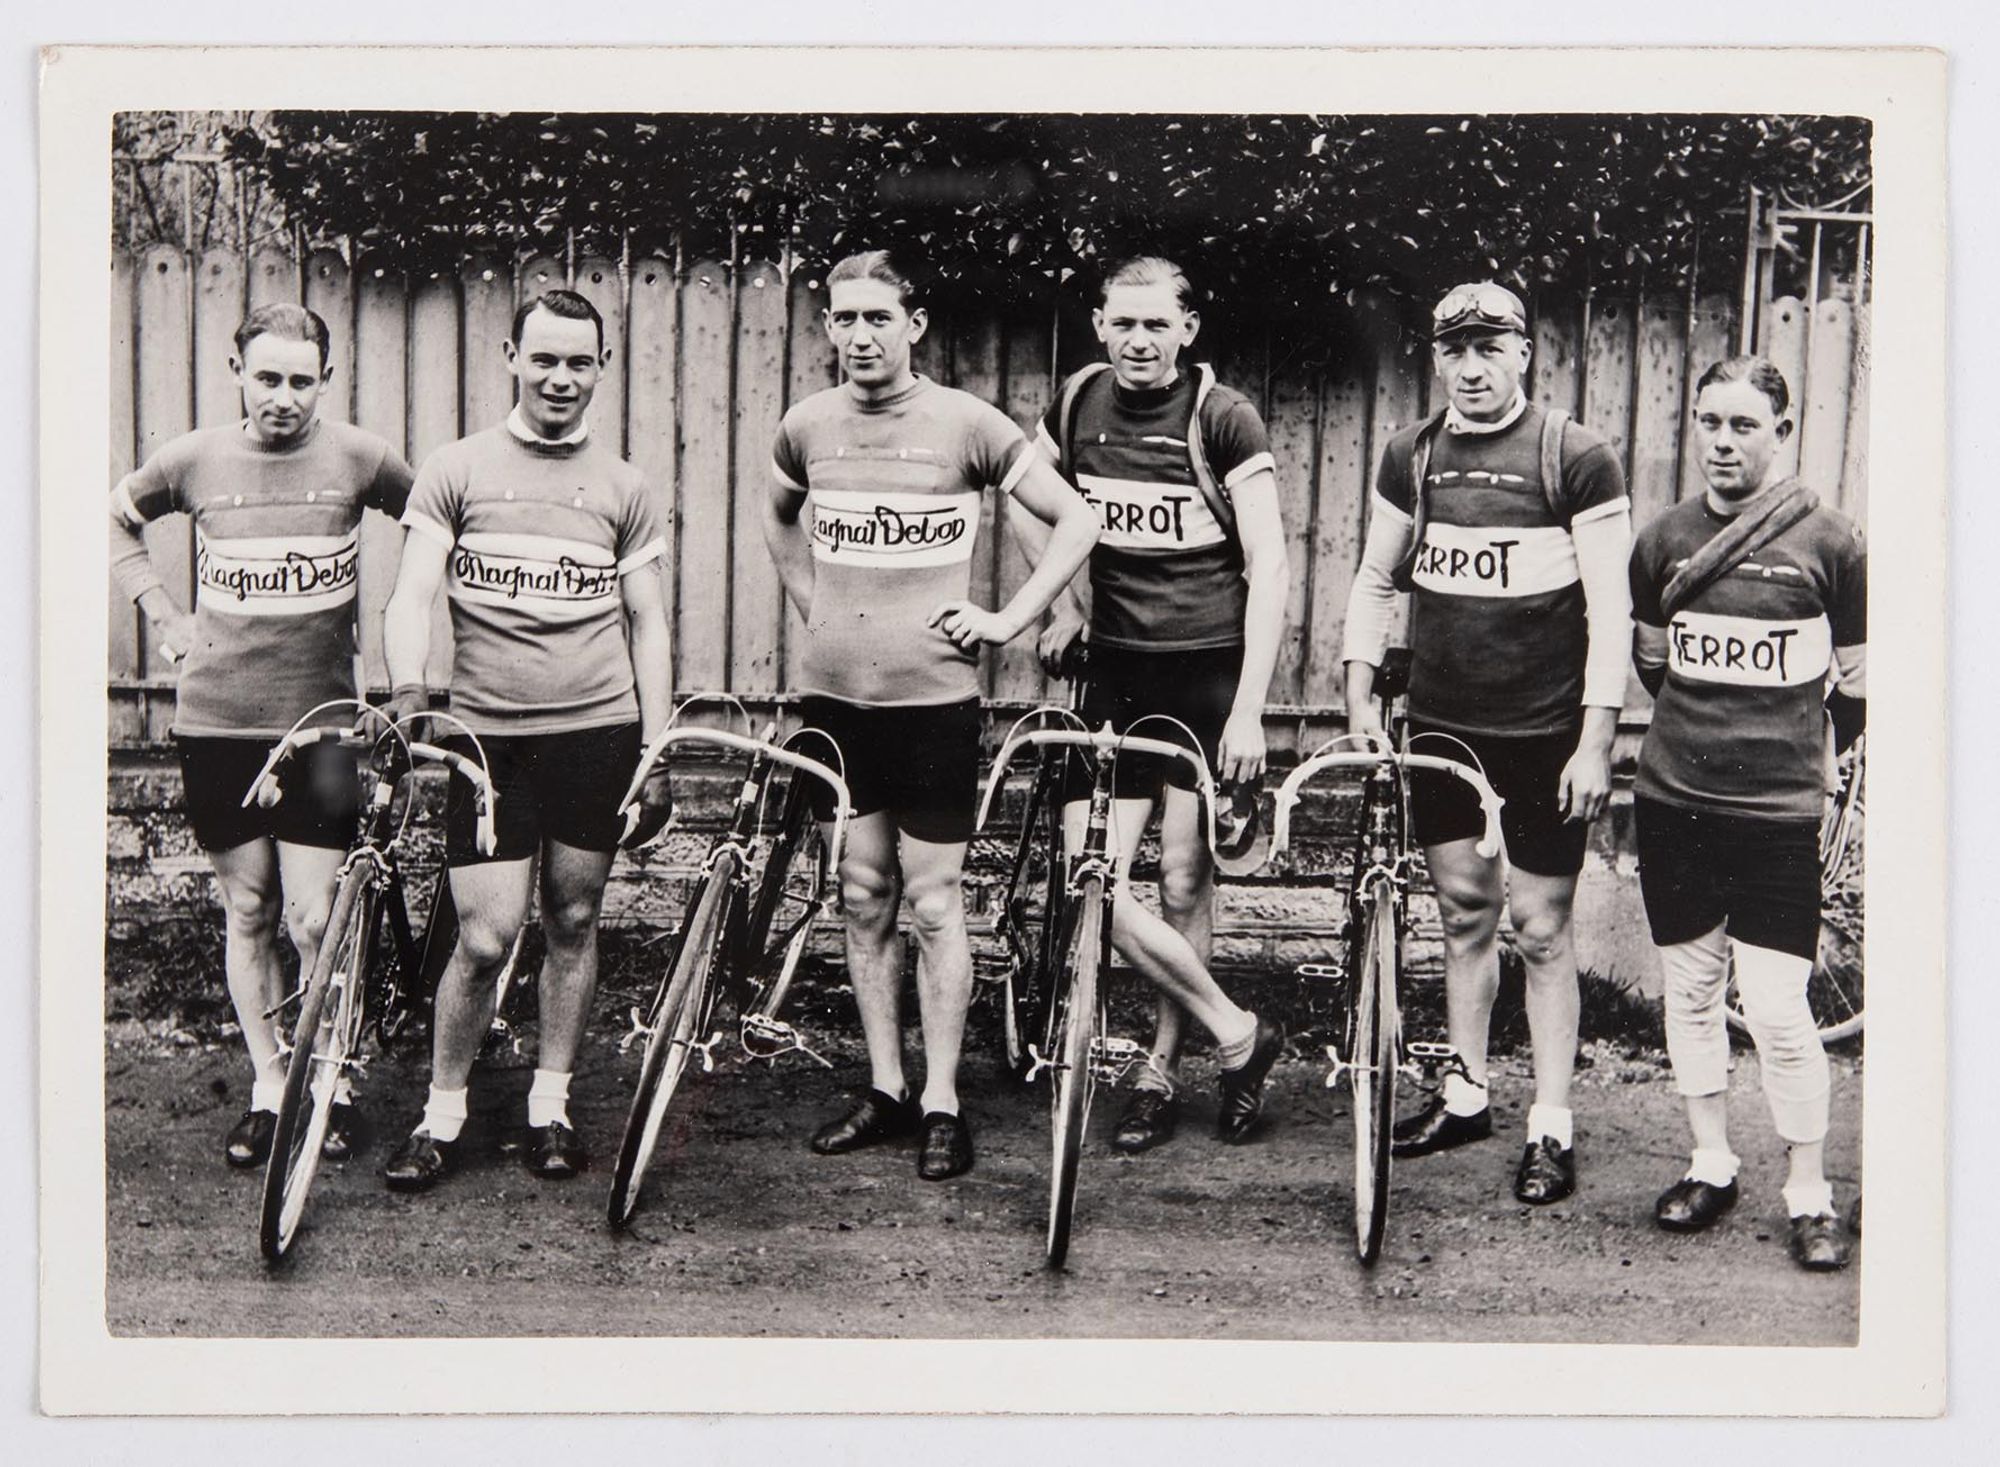 Photographie de groupe. Six coureurs cyclistes, dont J. Krubs (troisième en partant de la gauche), en maillots Magnat-Debon et Terrot posent avec leur vélo. Lieu à identifier.